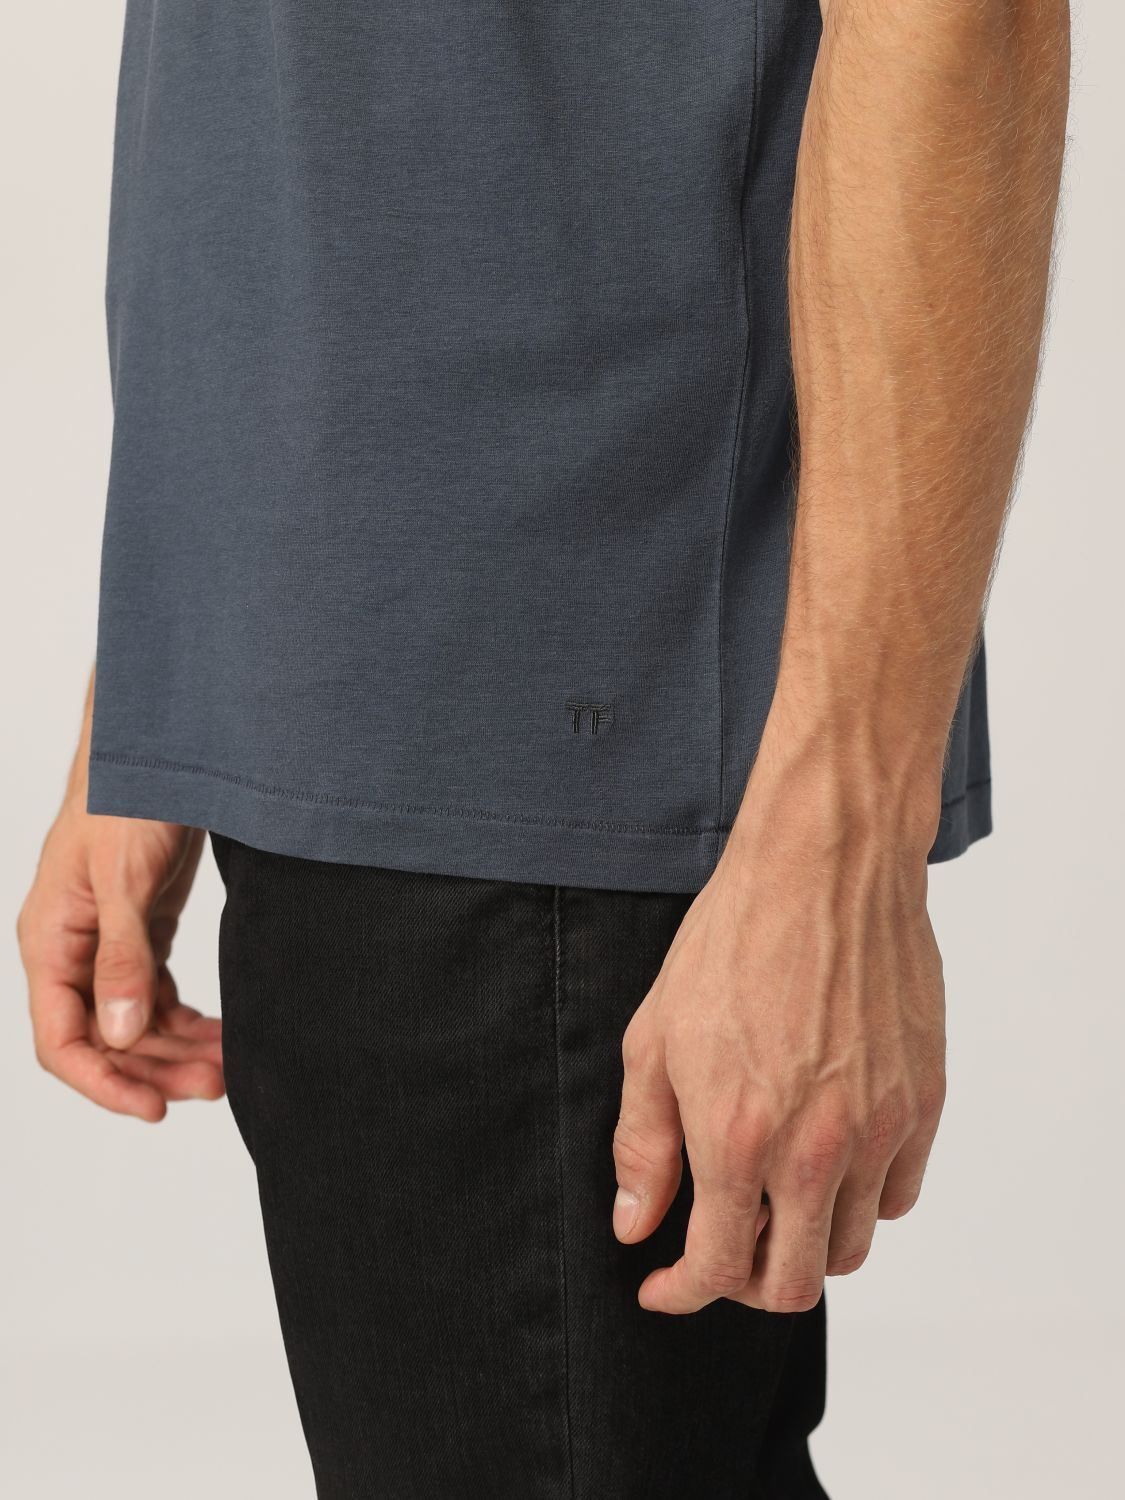 Camiseta Tom Ford: Camiseta hombre Tom Ford azul oscuro 4